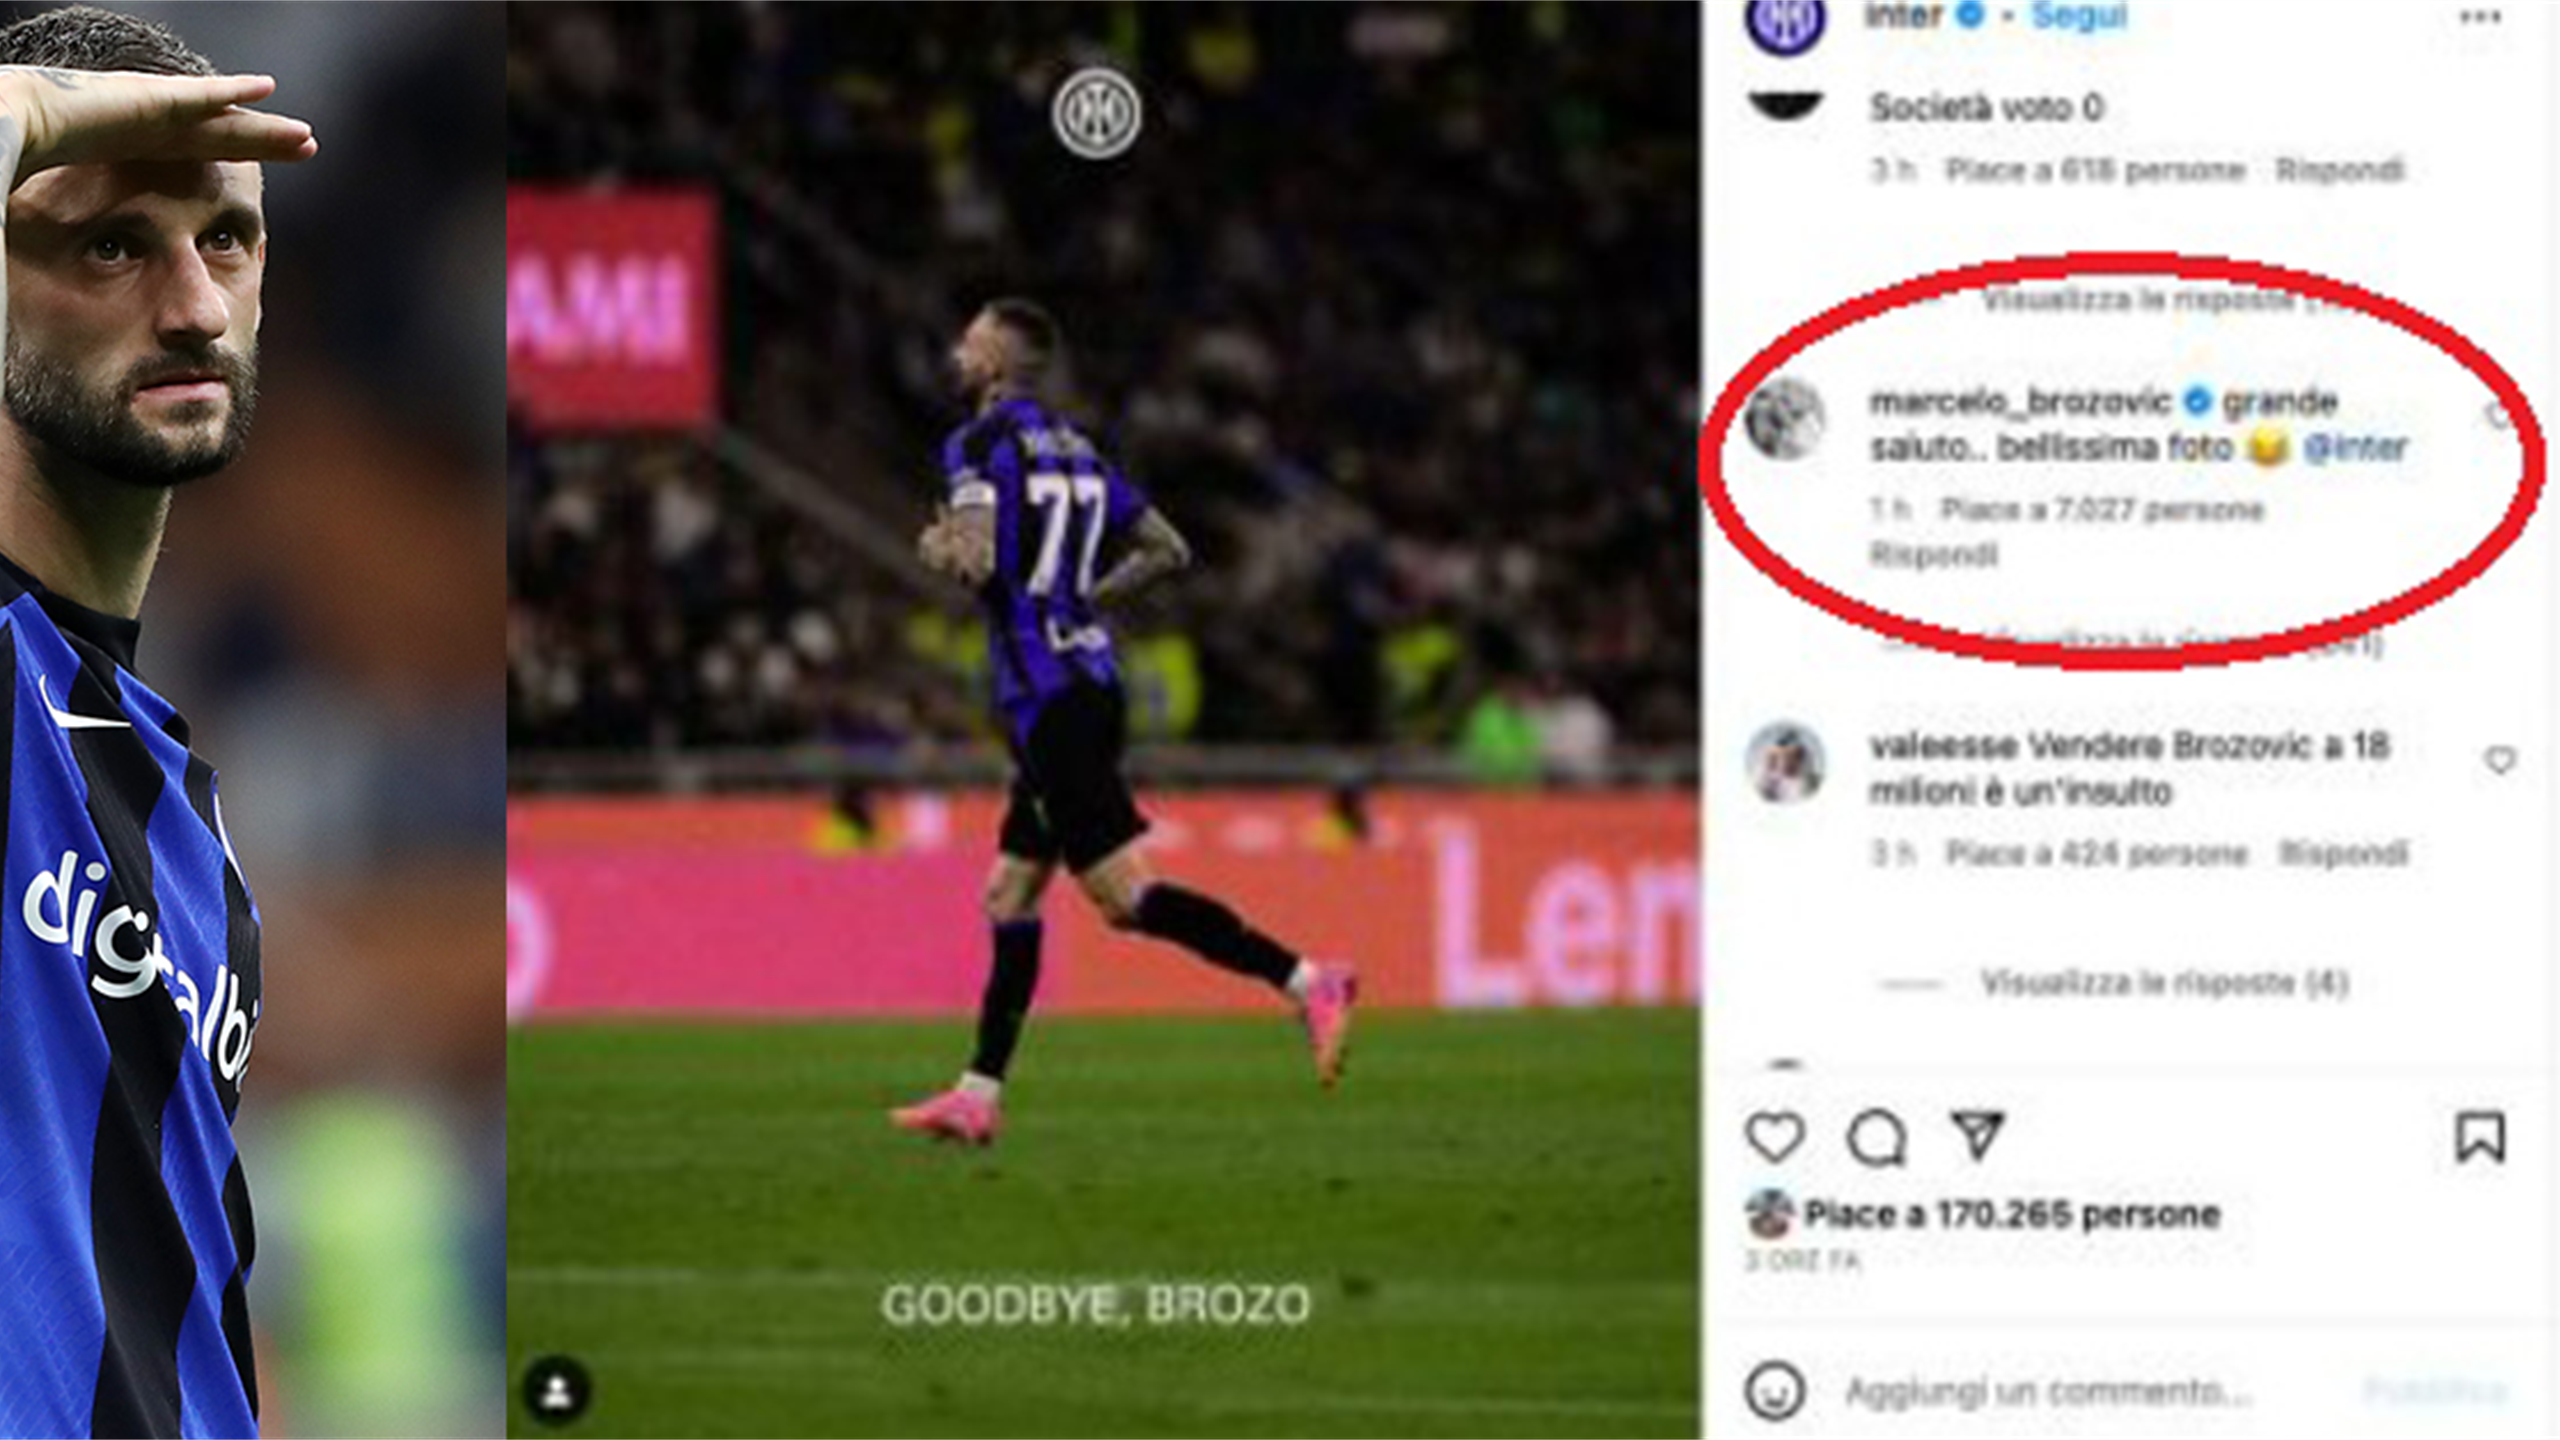 Perché Brozovic non ha gradito il post social d'addio dell'Inter